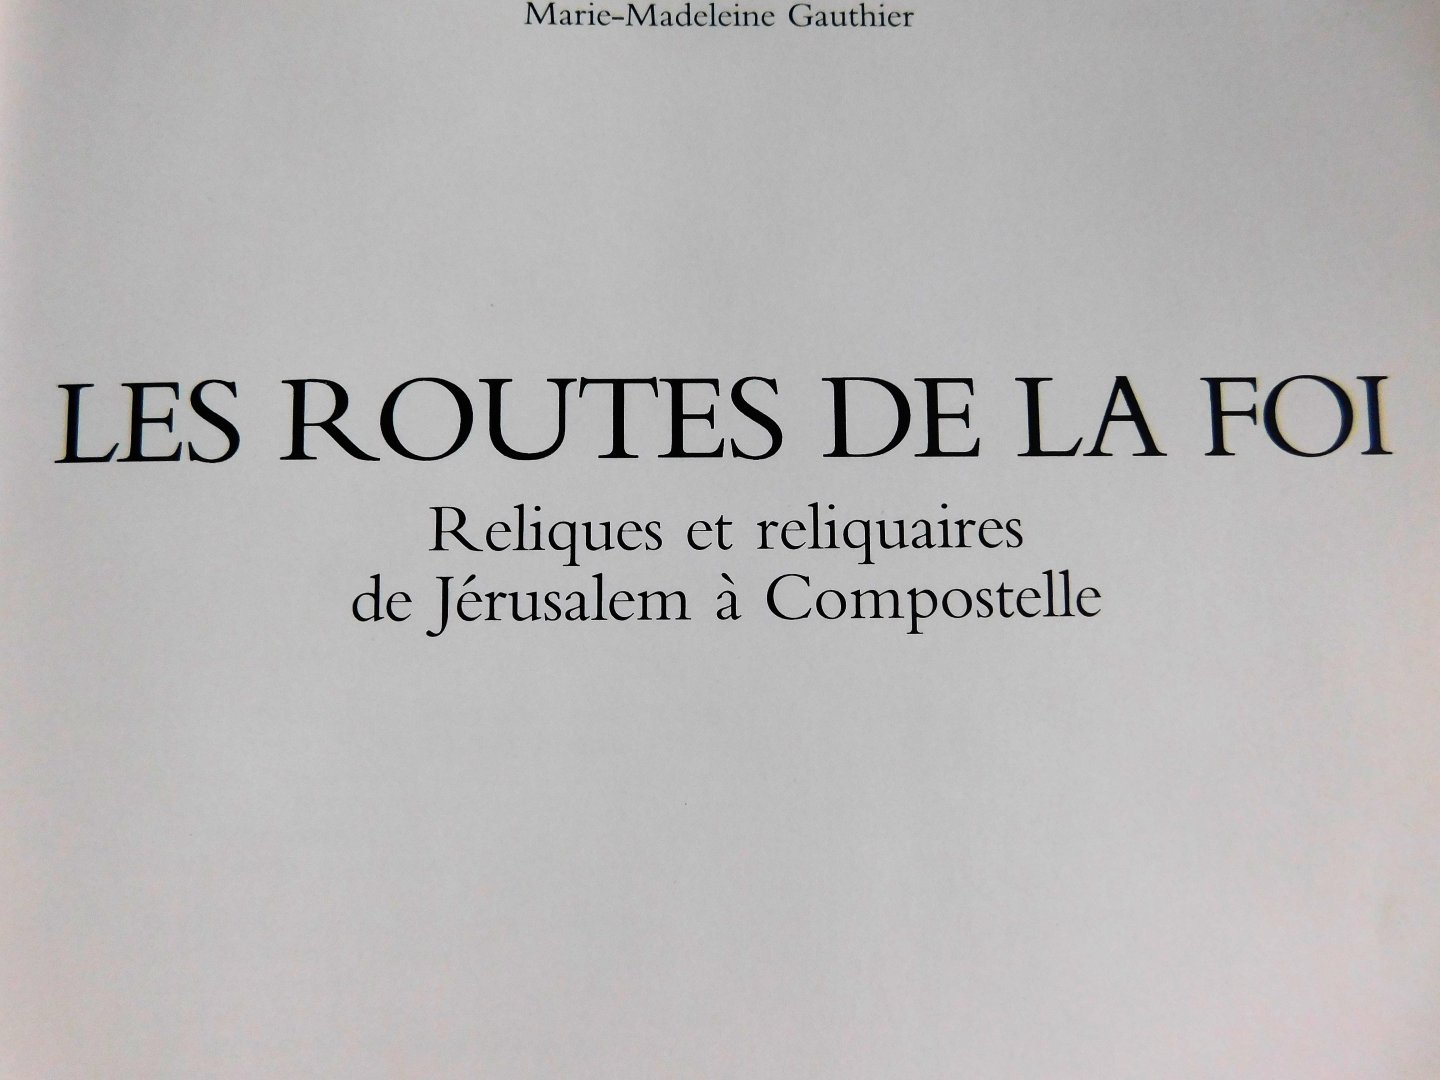 Marie-Madeleine Gauthier - Les Routes De La Foi